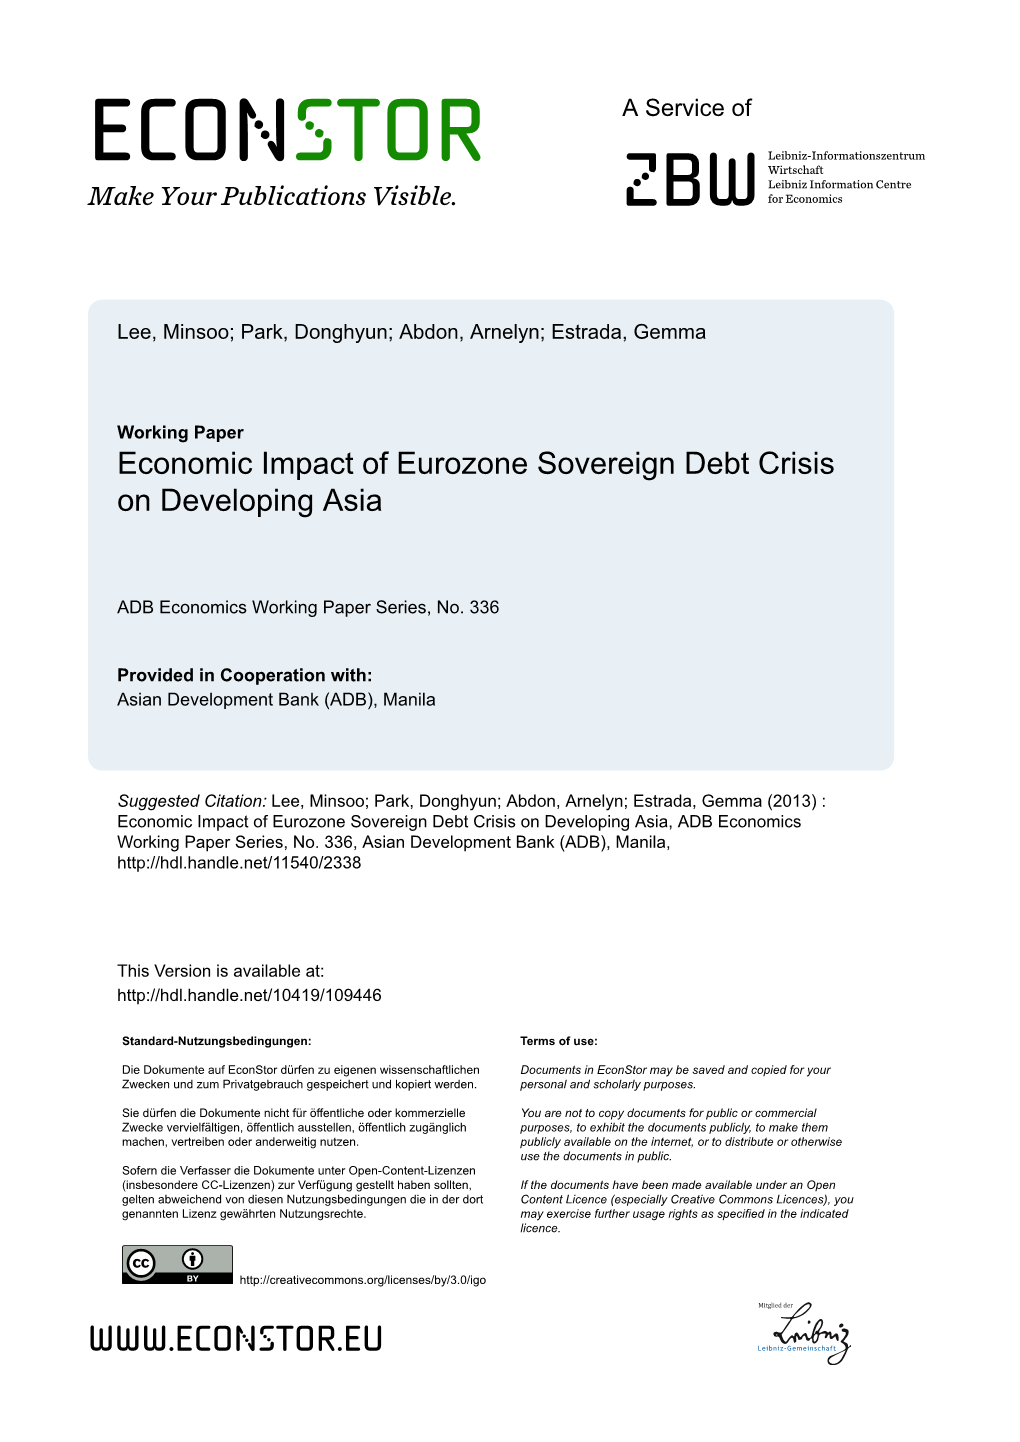 Economic Impact of Eurozone Sovereign Debt Crisis on Developing Asia